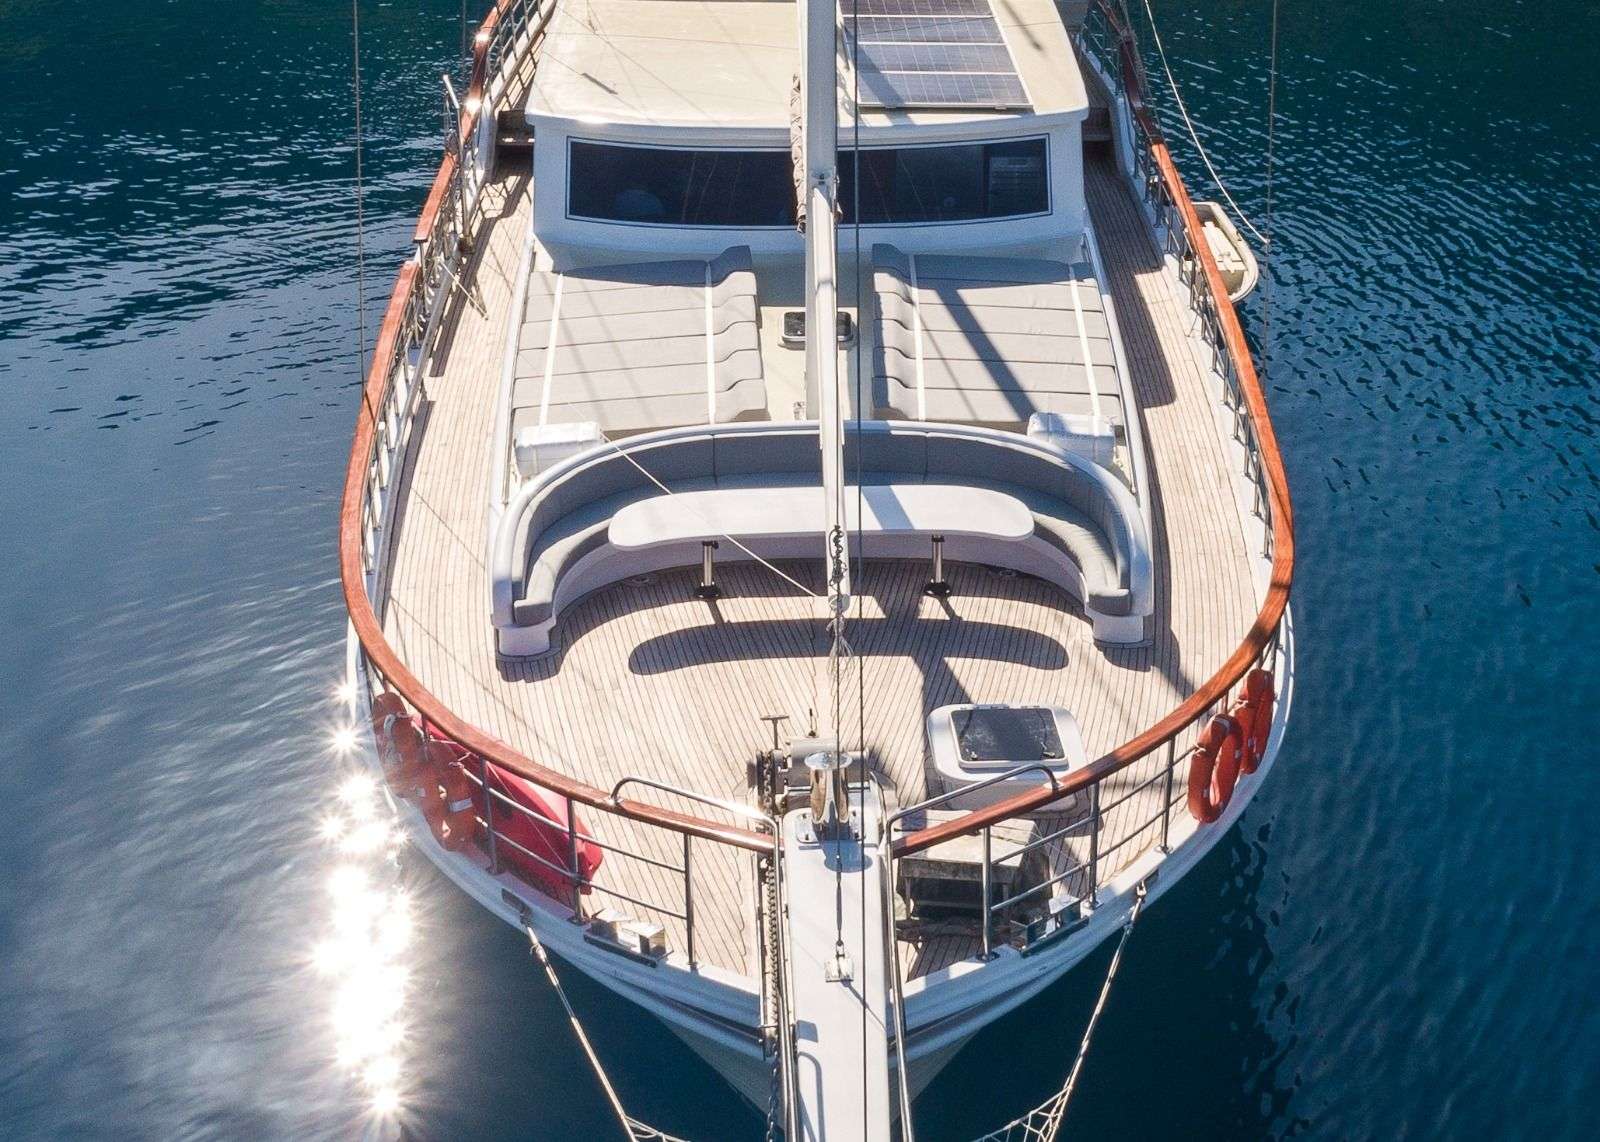 koray ege - Yacht Charter Milos & Boat hire in Greece & Turkey 6